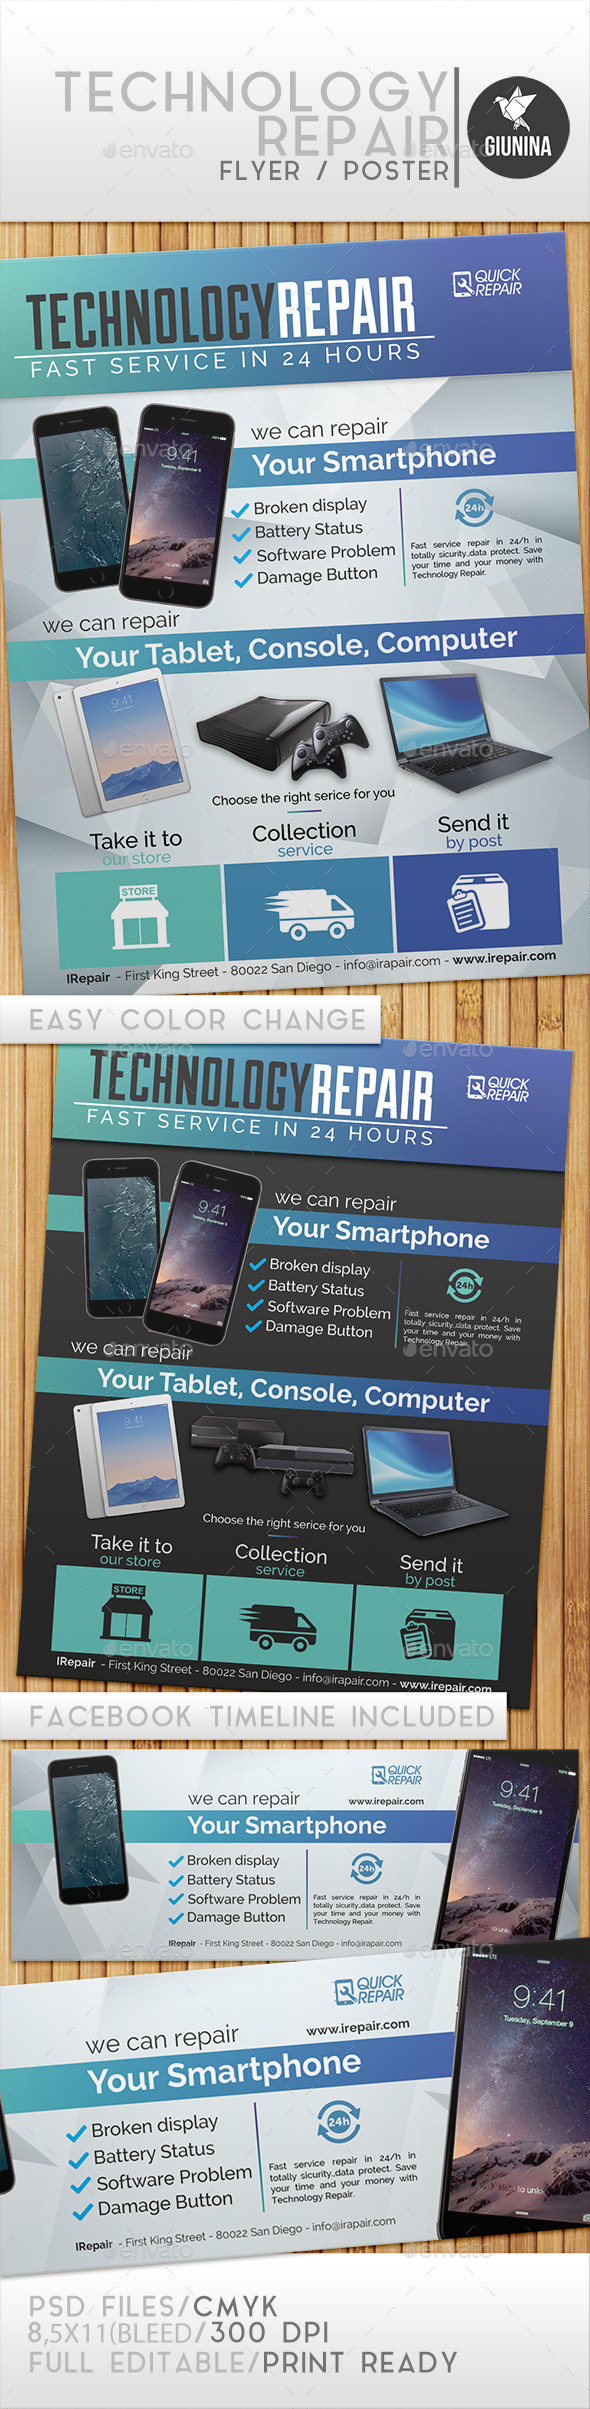 Technology Repair Flyer/Poster